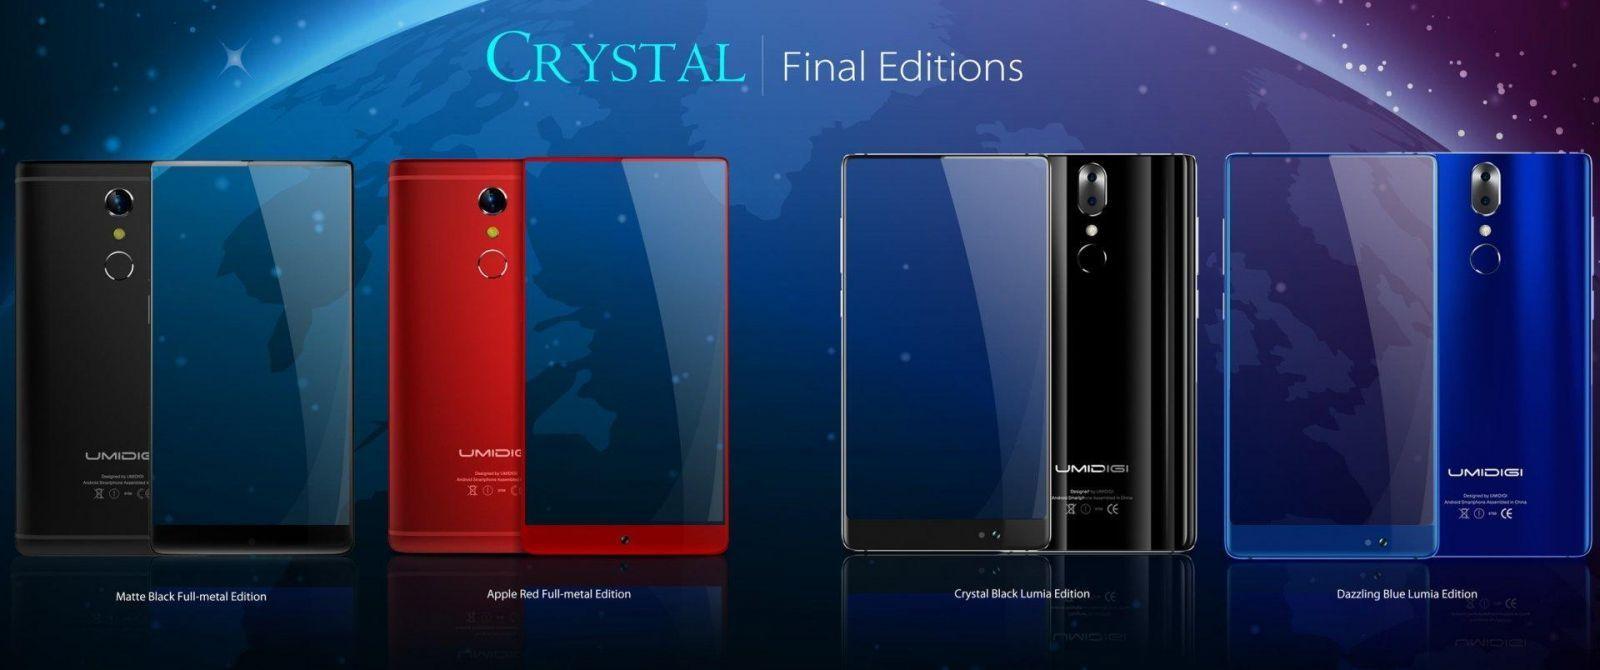 У смартфона UMIDIGI Crystal Pro будет двойная камера Panasonic Lumix (4 colors)